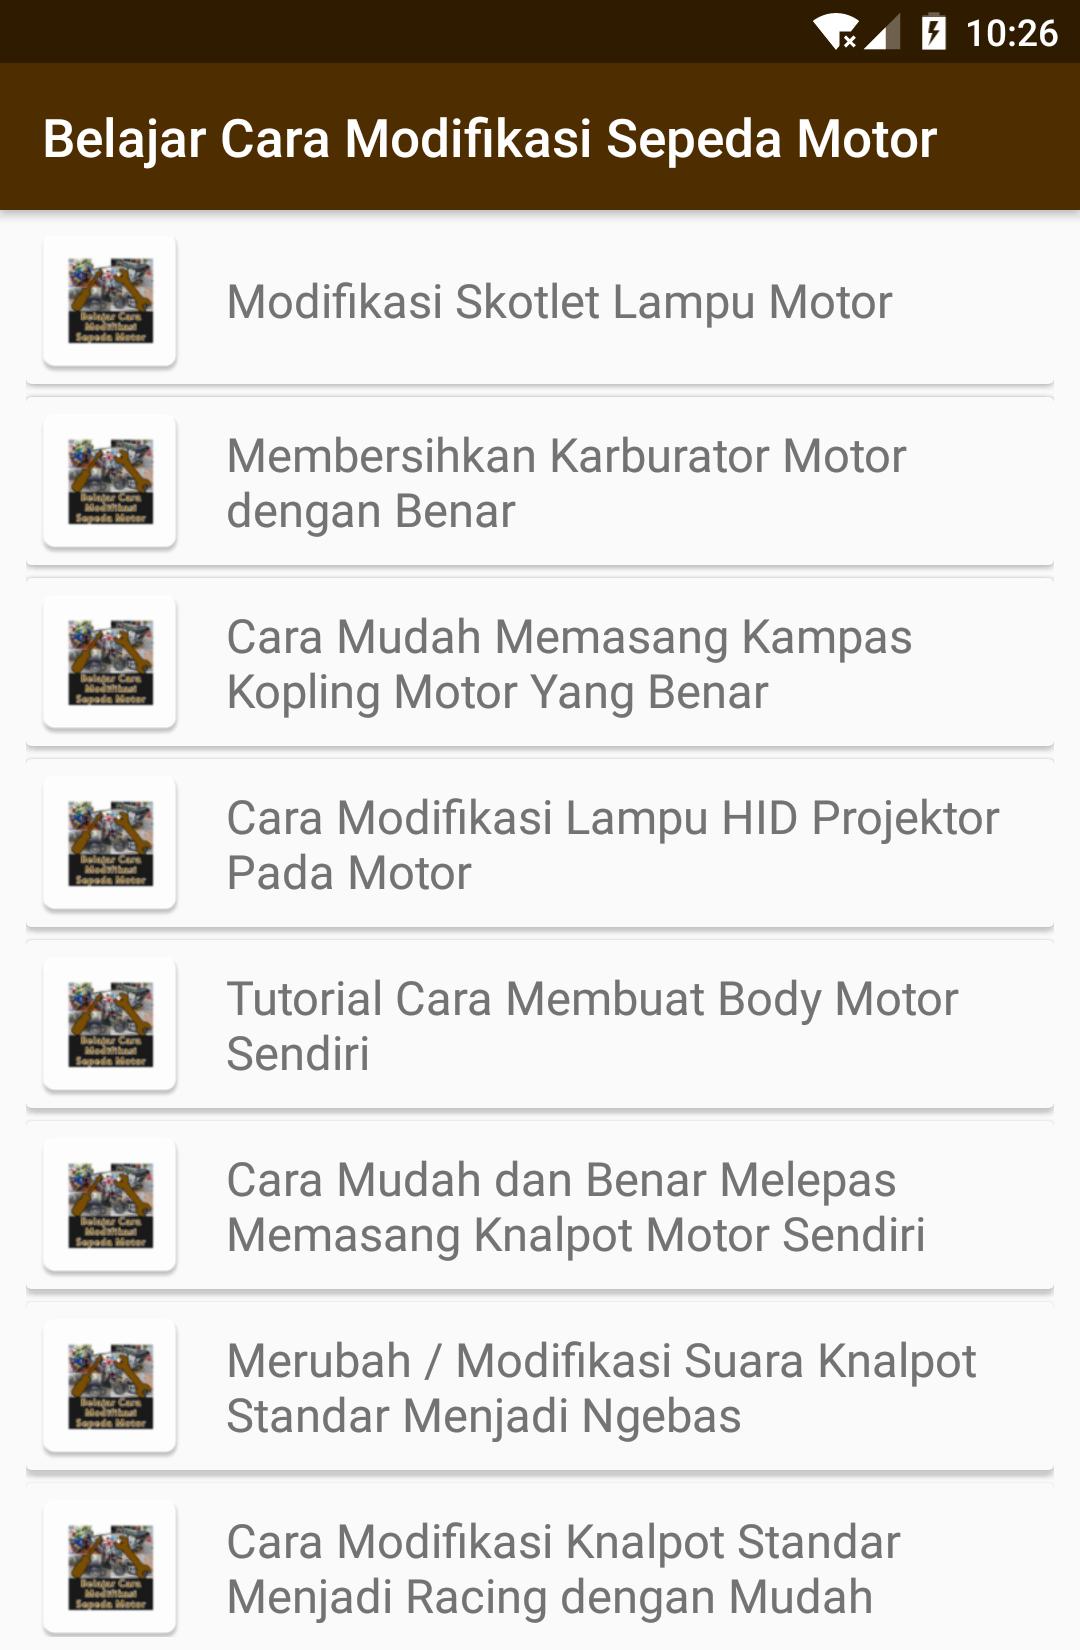 Belajar Cara Modifikasi Sepeda Motor For Android APK Download